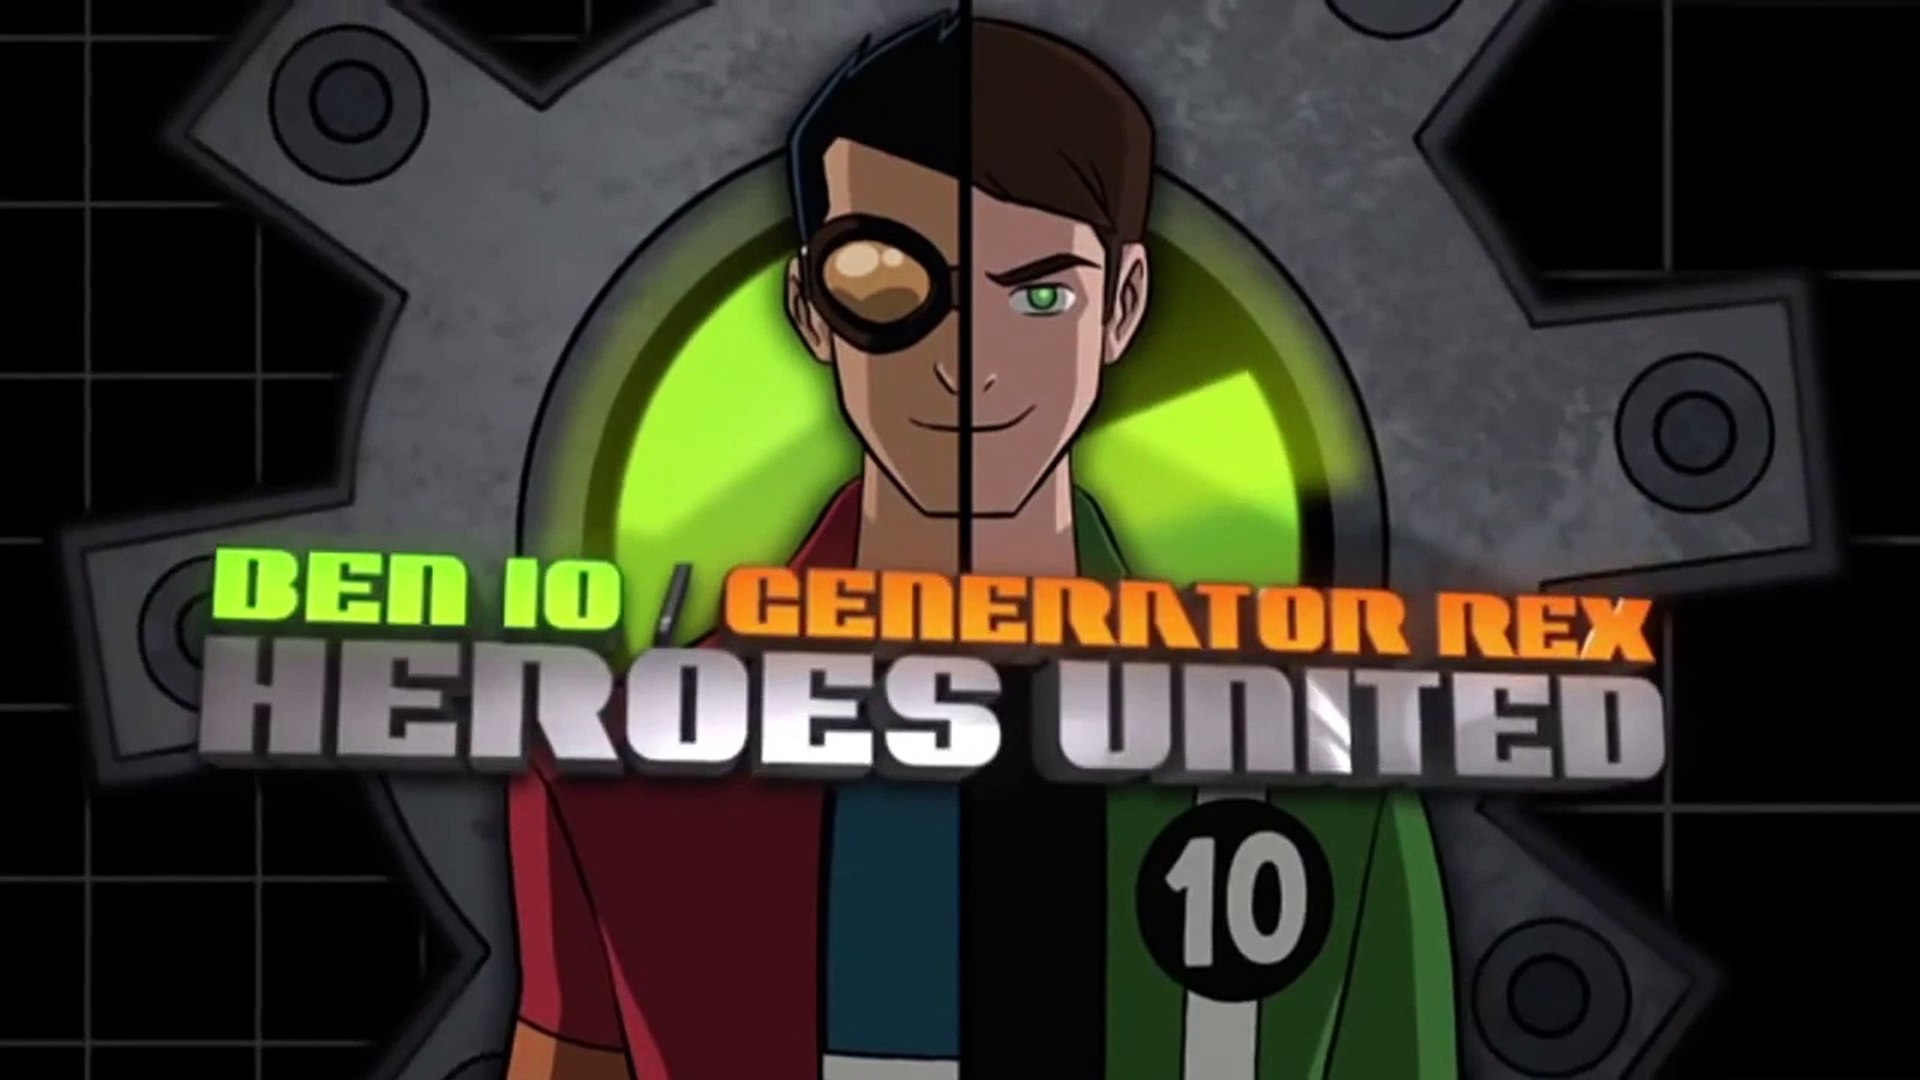 Ben 10 / Generator Rex: Heroes United